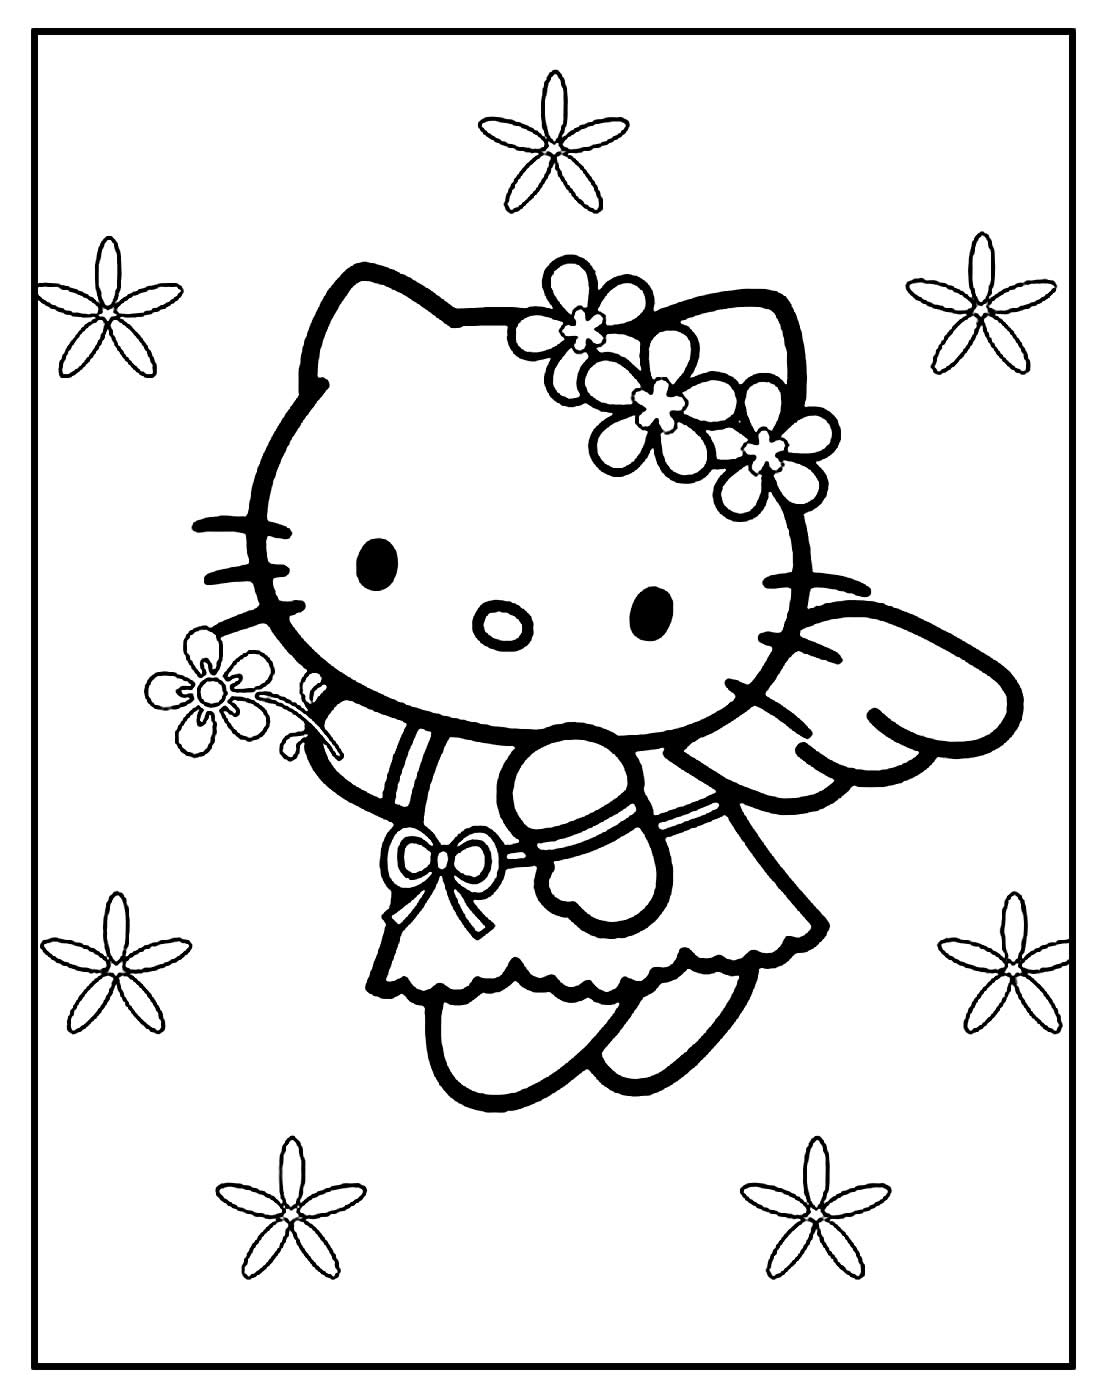 Página para colorir de Hello Kitty